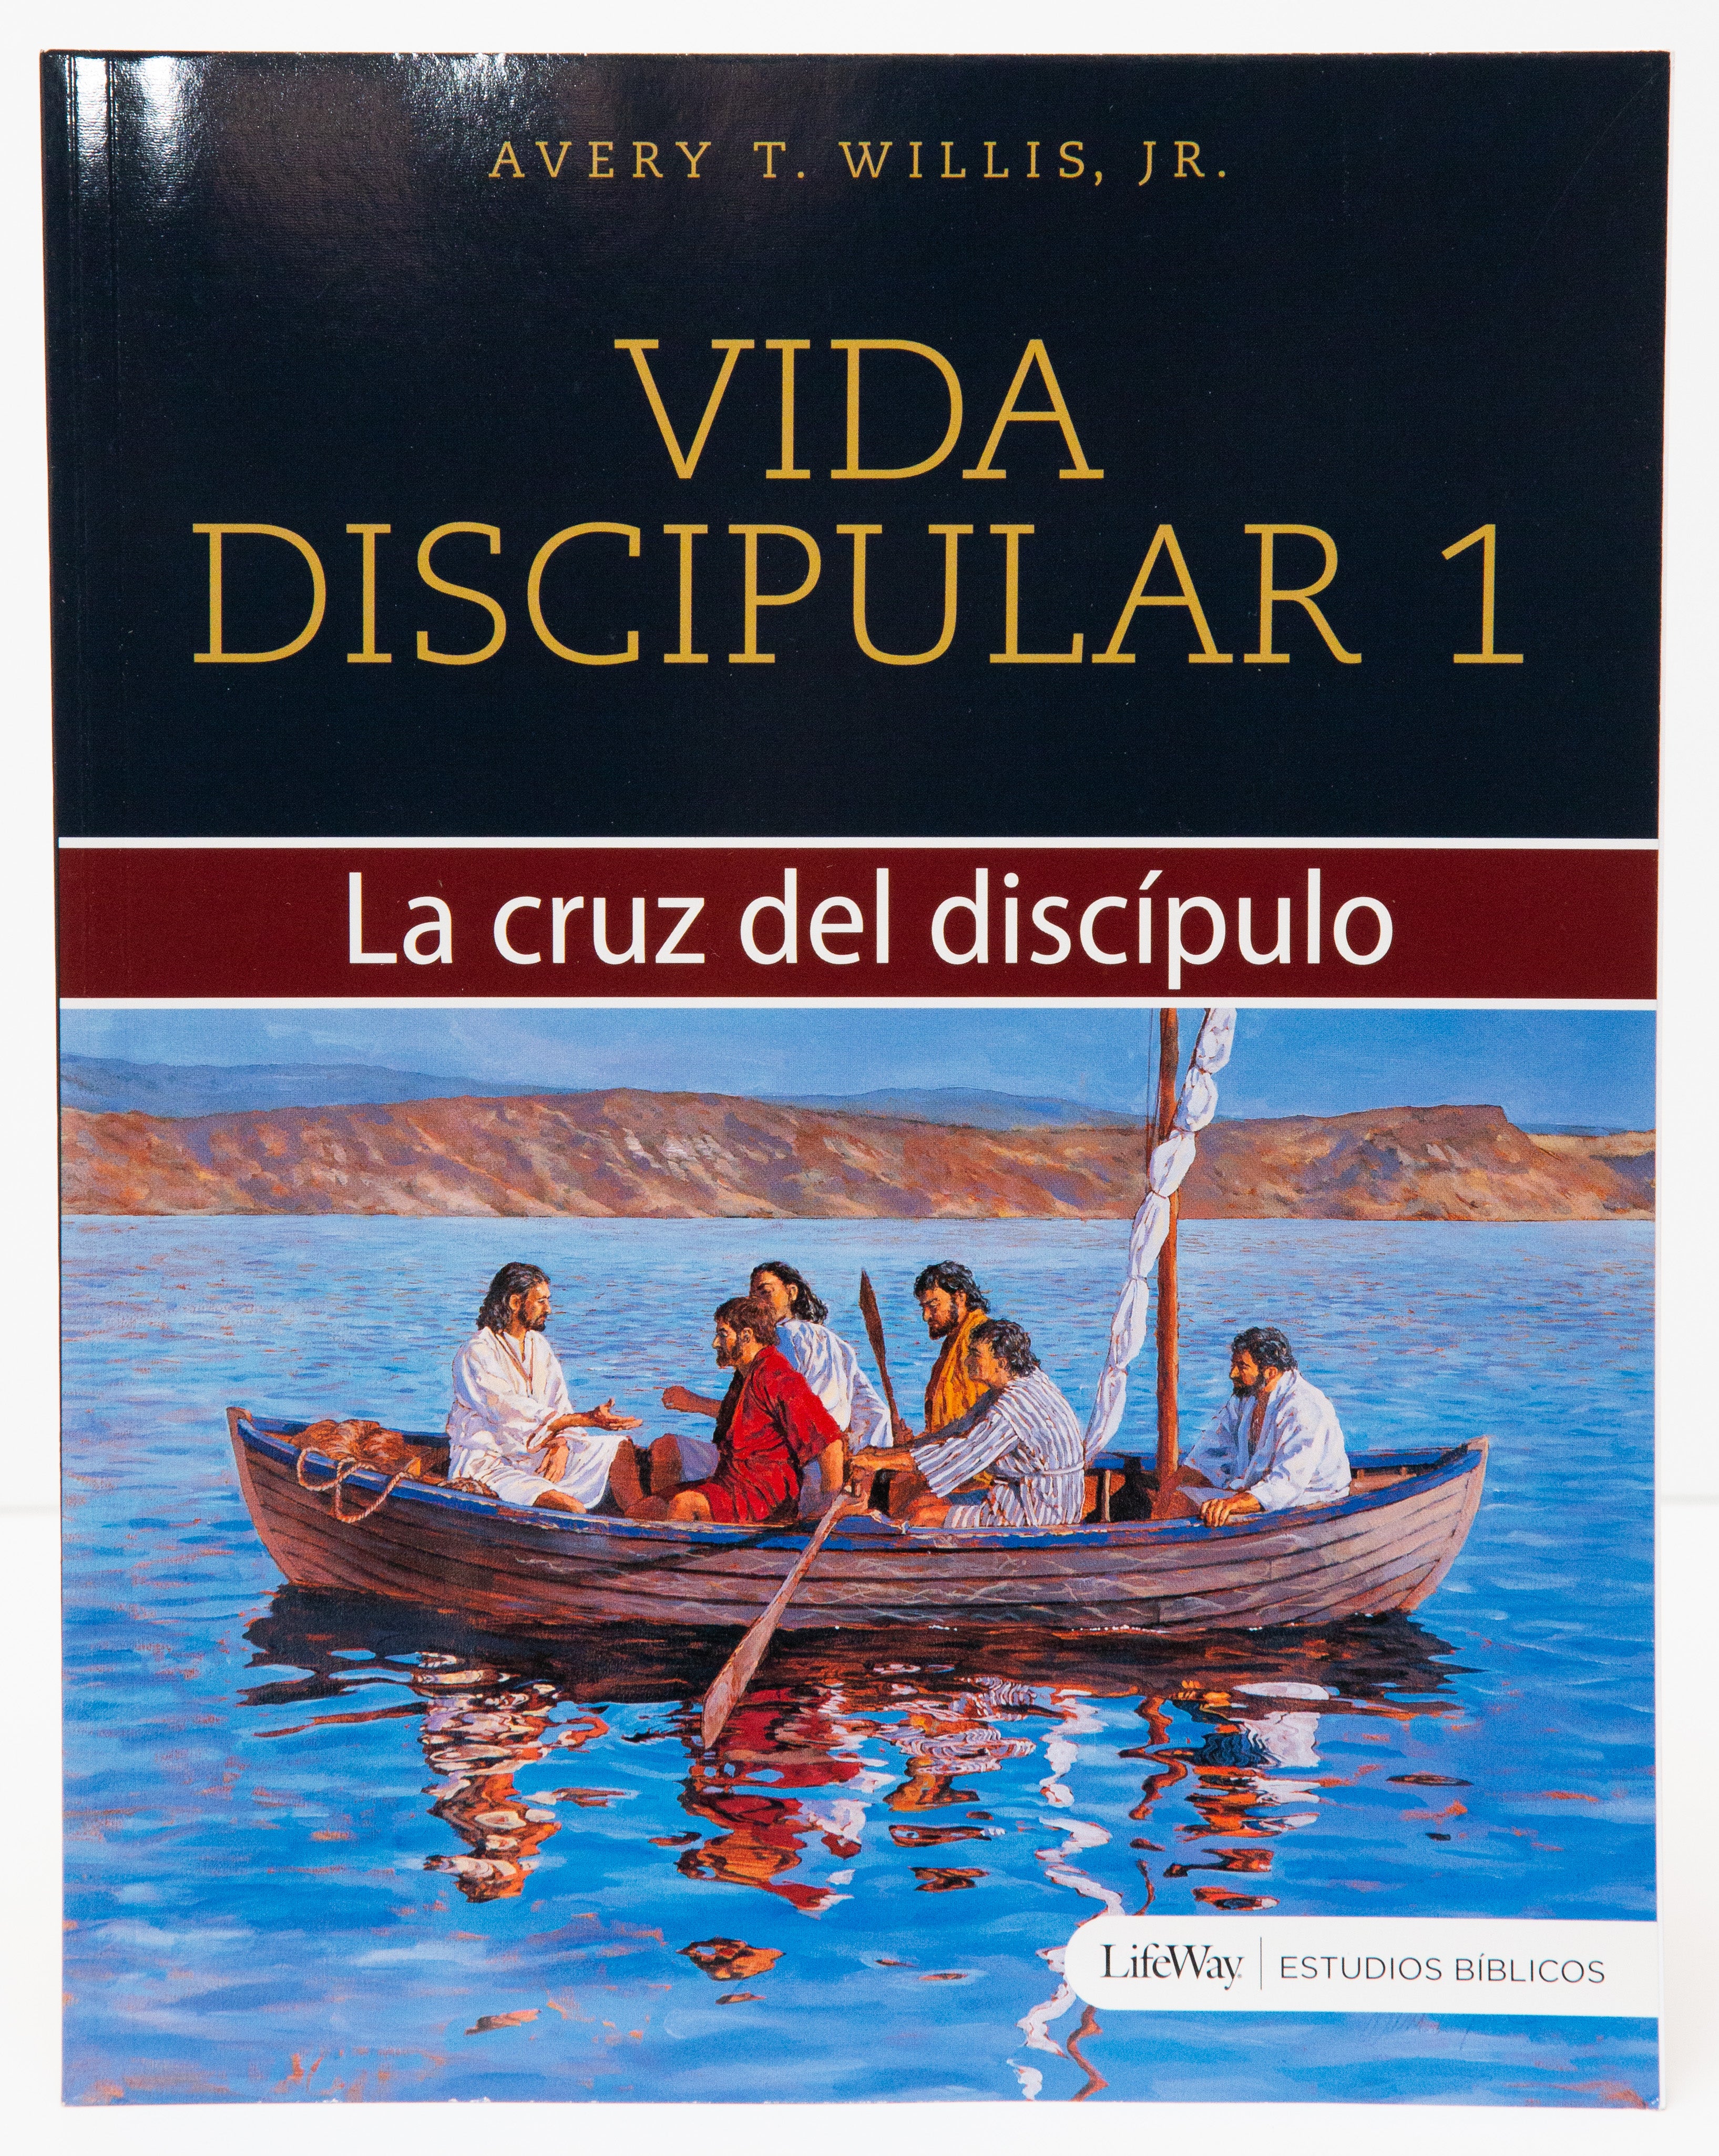 Vida Discipular 1 - Librería Libros Cristianos - Libro